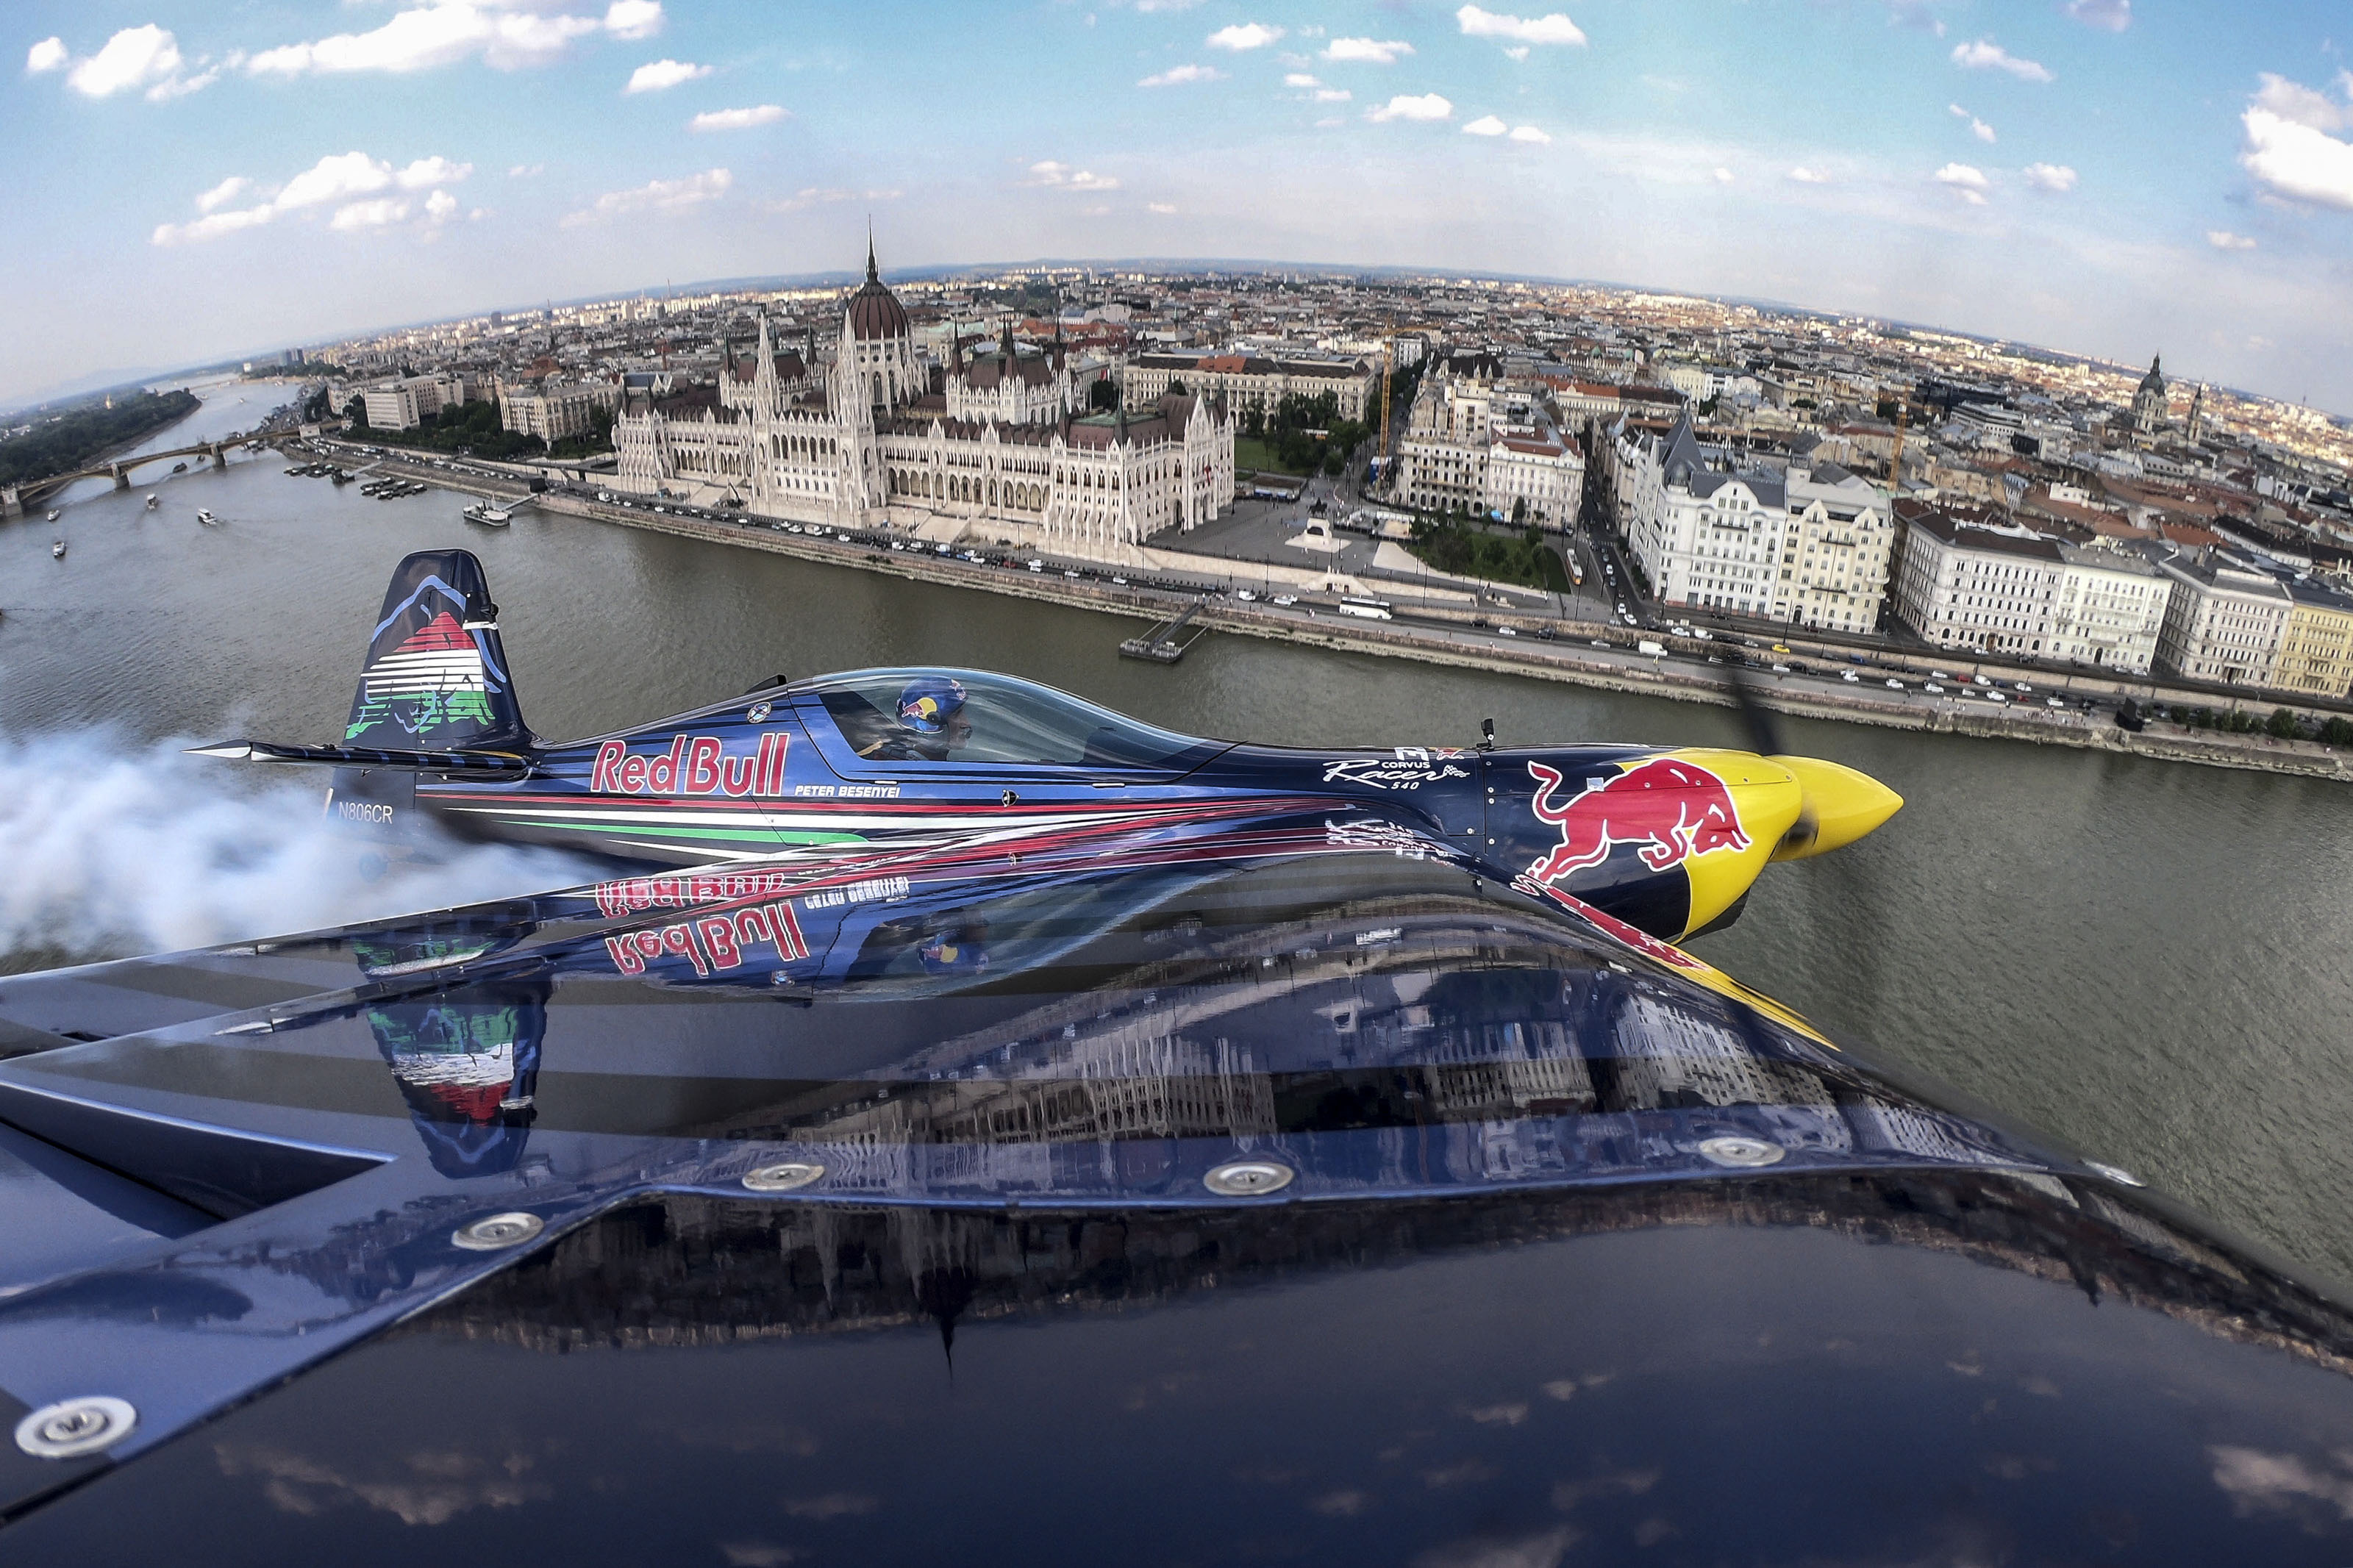 Idén is lesz Red Bull Air Race, pedig Tarlós azt mondta, többé „ilyen botrányos zűrzavar nem fordulhat elő a városban”